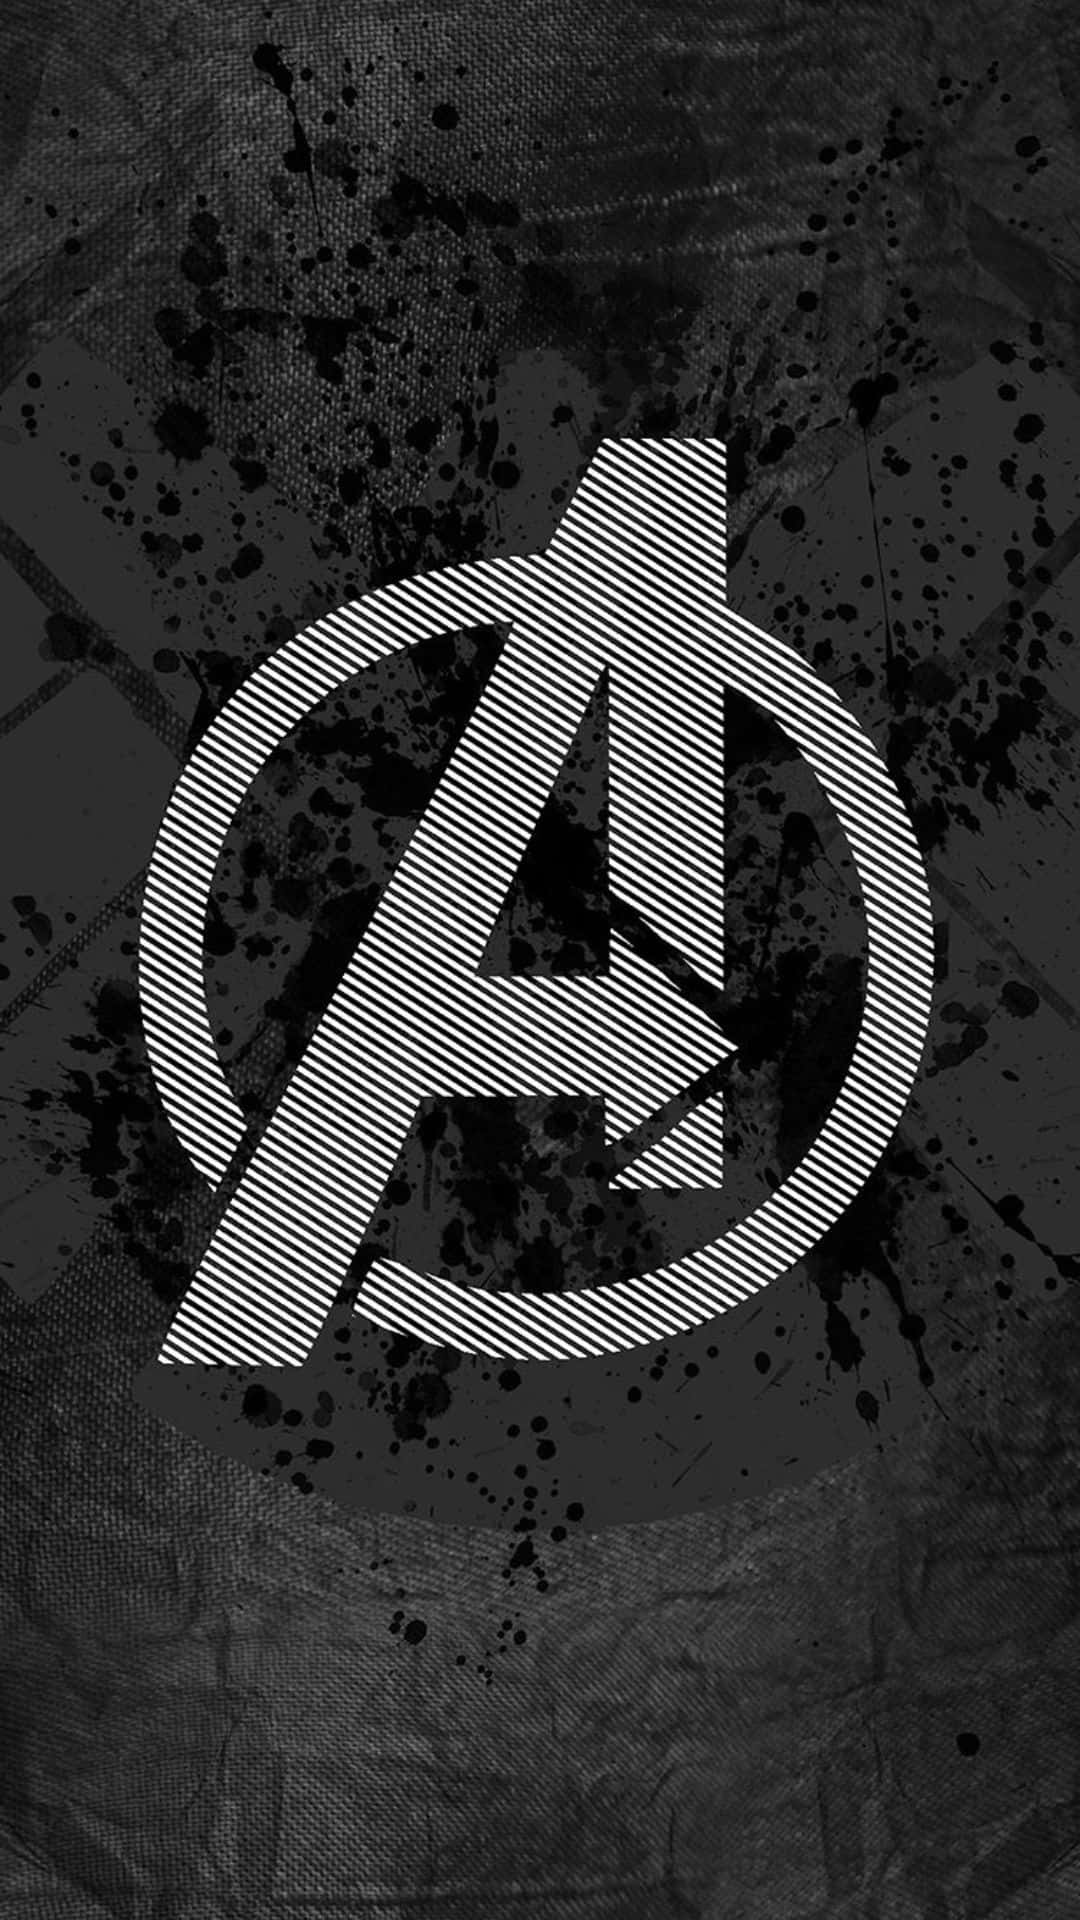 Sfondoandroid Grigio Con Il Logo Degli Avengers Di Marvel.